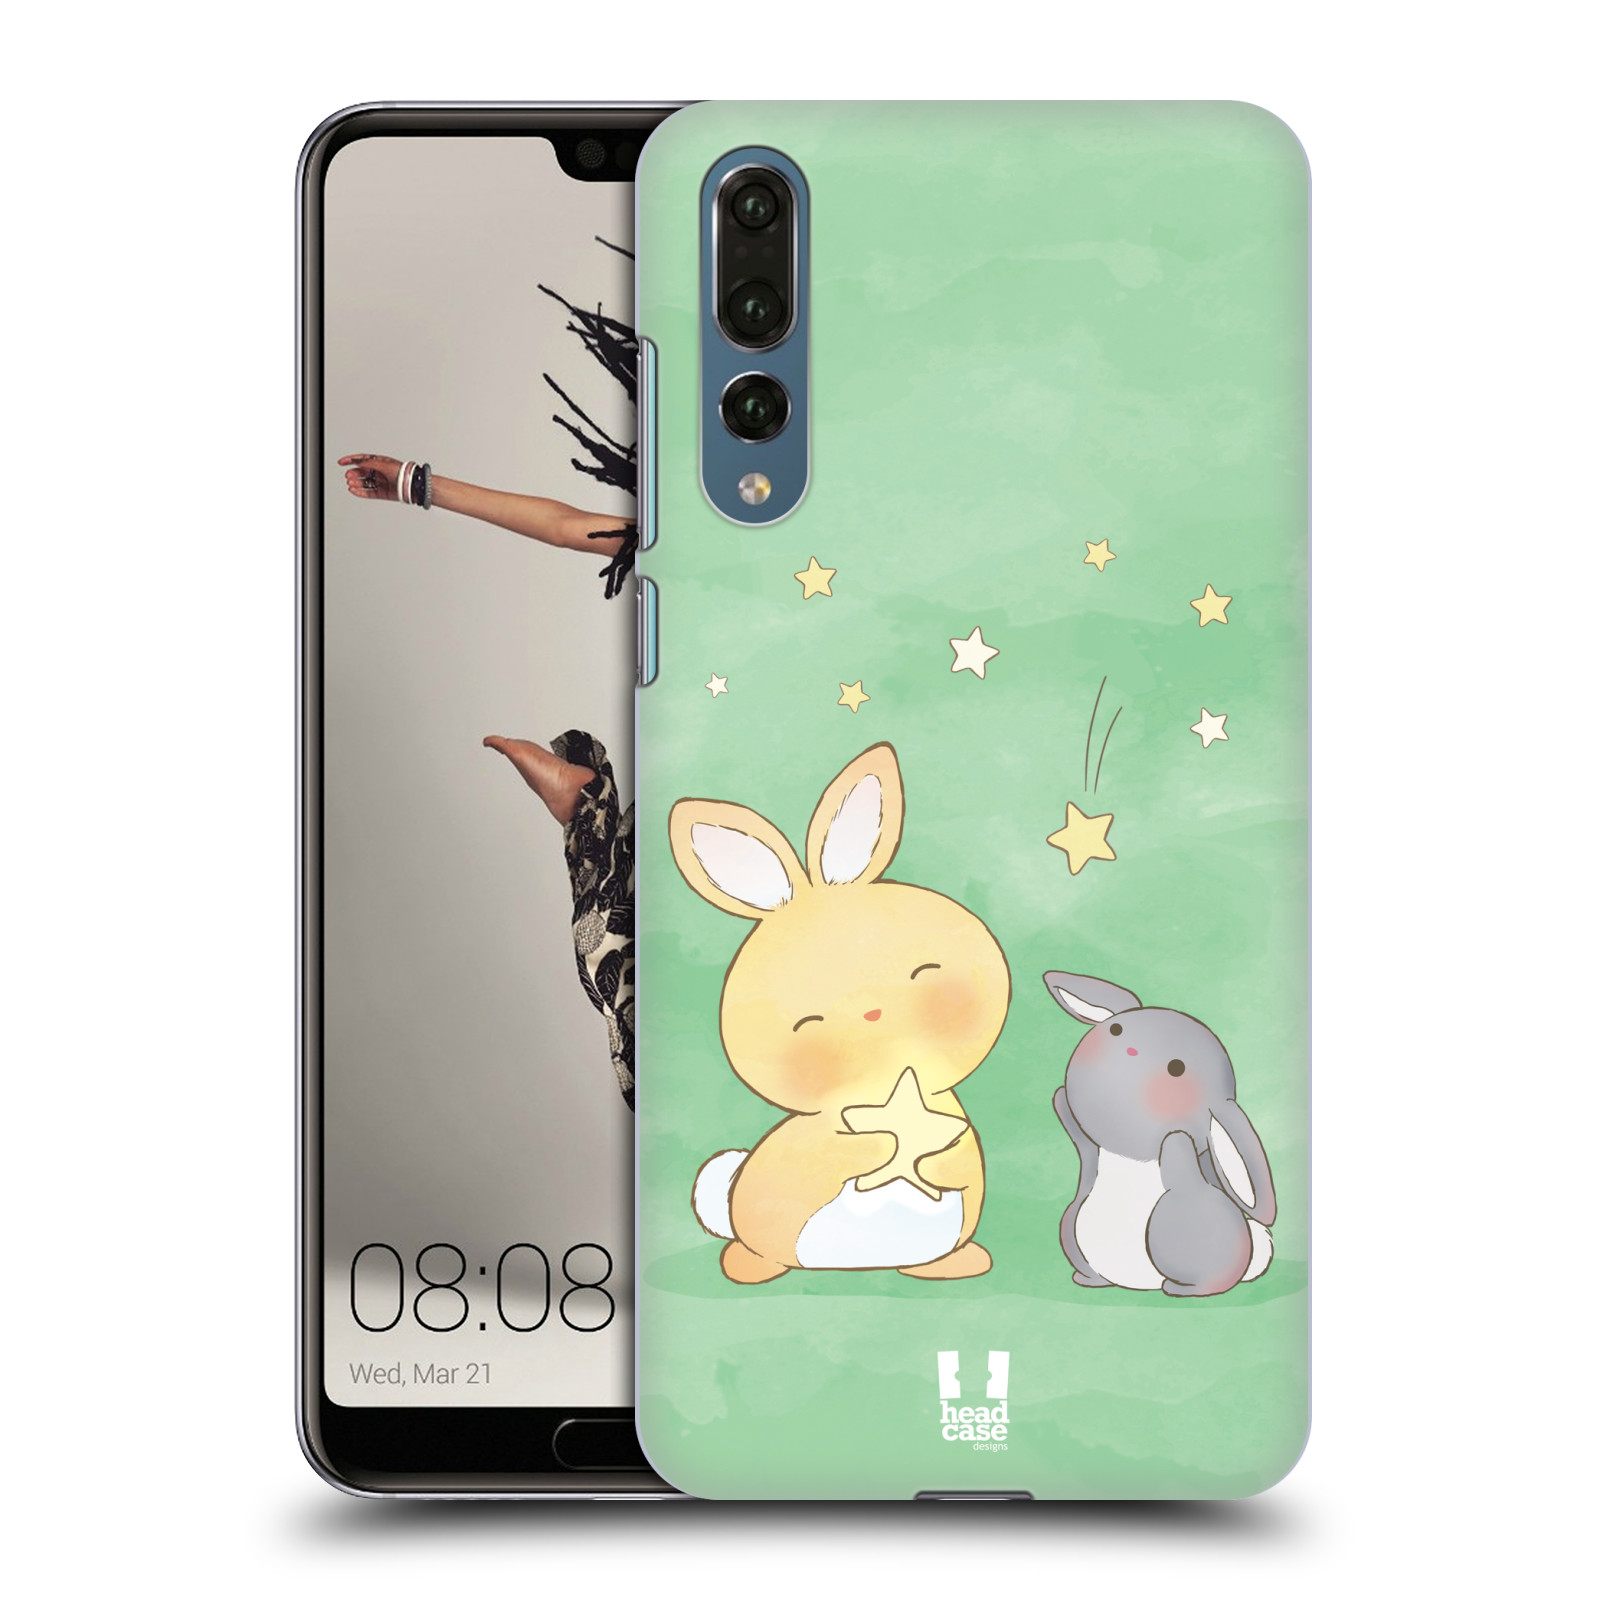 Zadní obal pro mobil Huawei P20 PRO - HEAD CASE - Dva Zajíčci a hvězdy